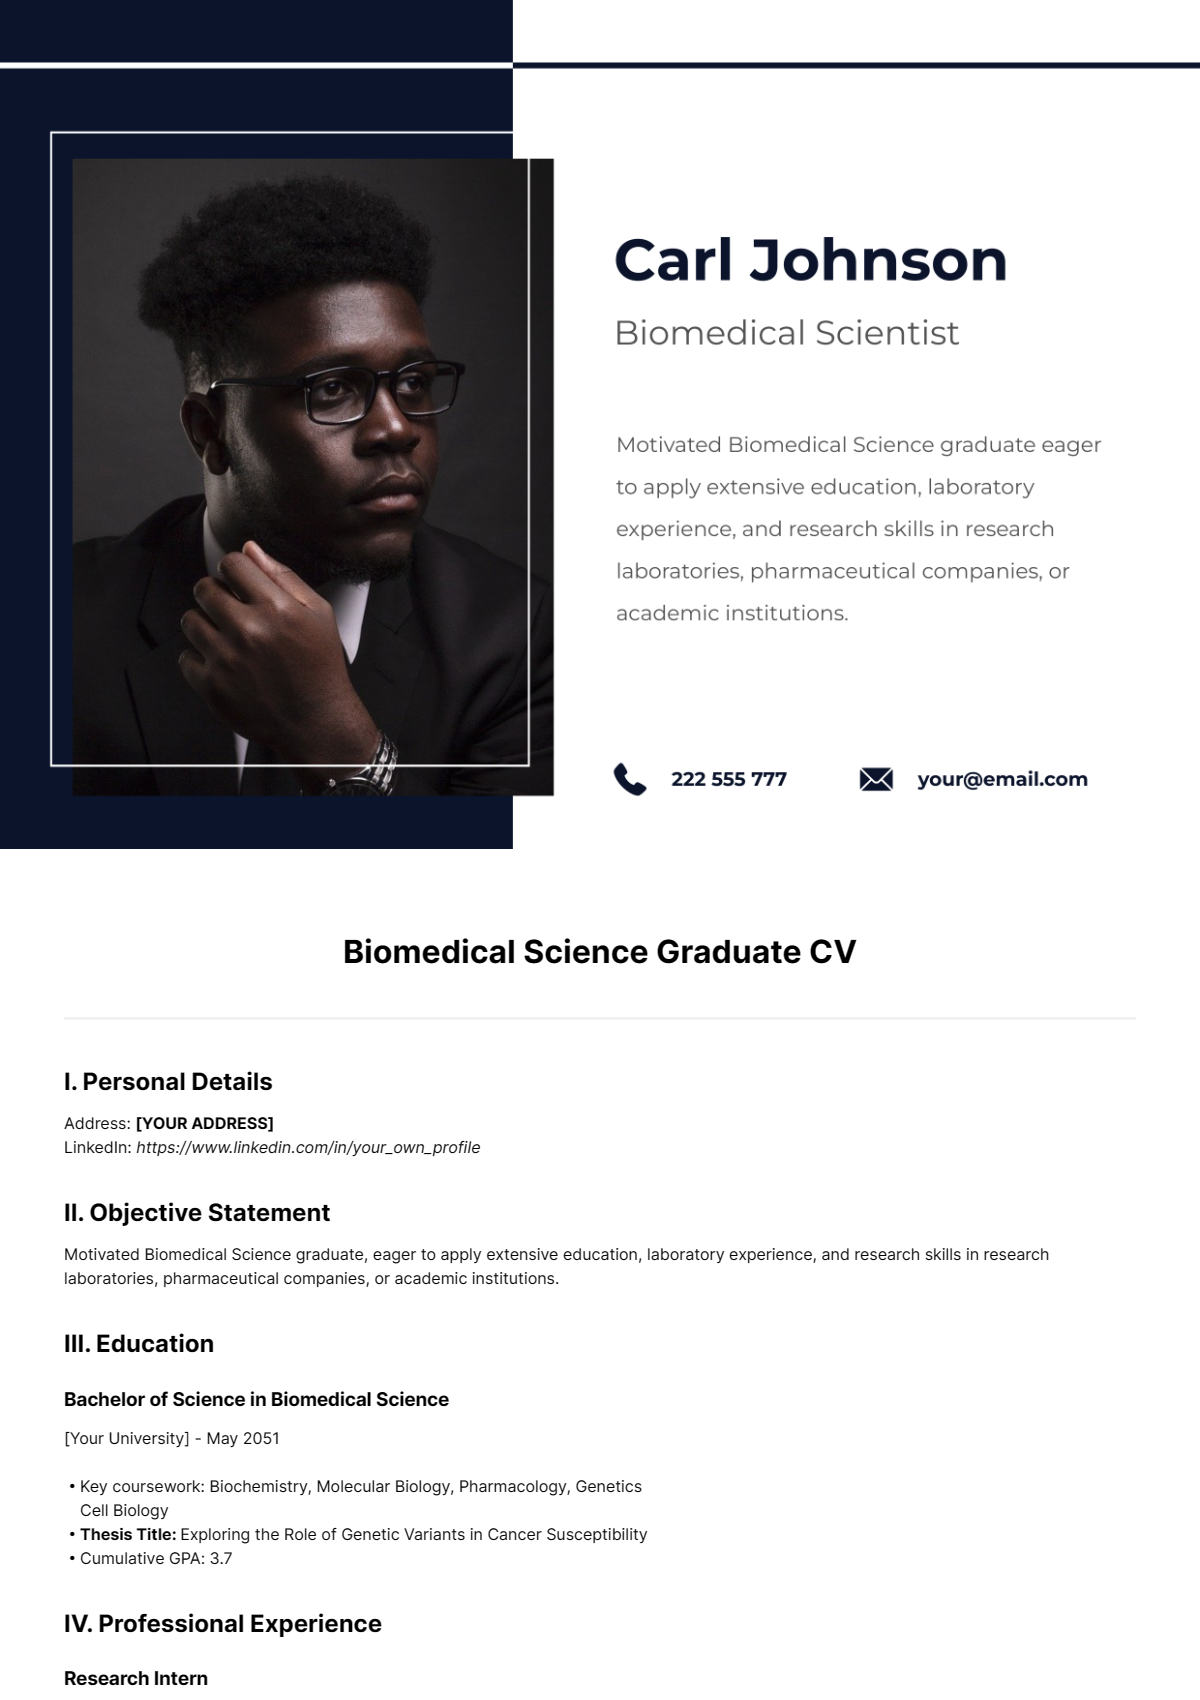 Biomedical Science Graduate CV Template